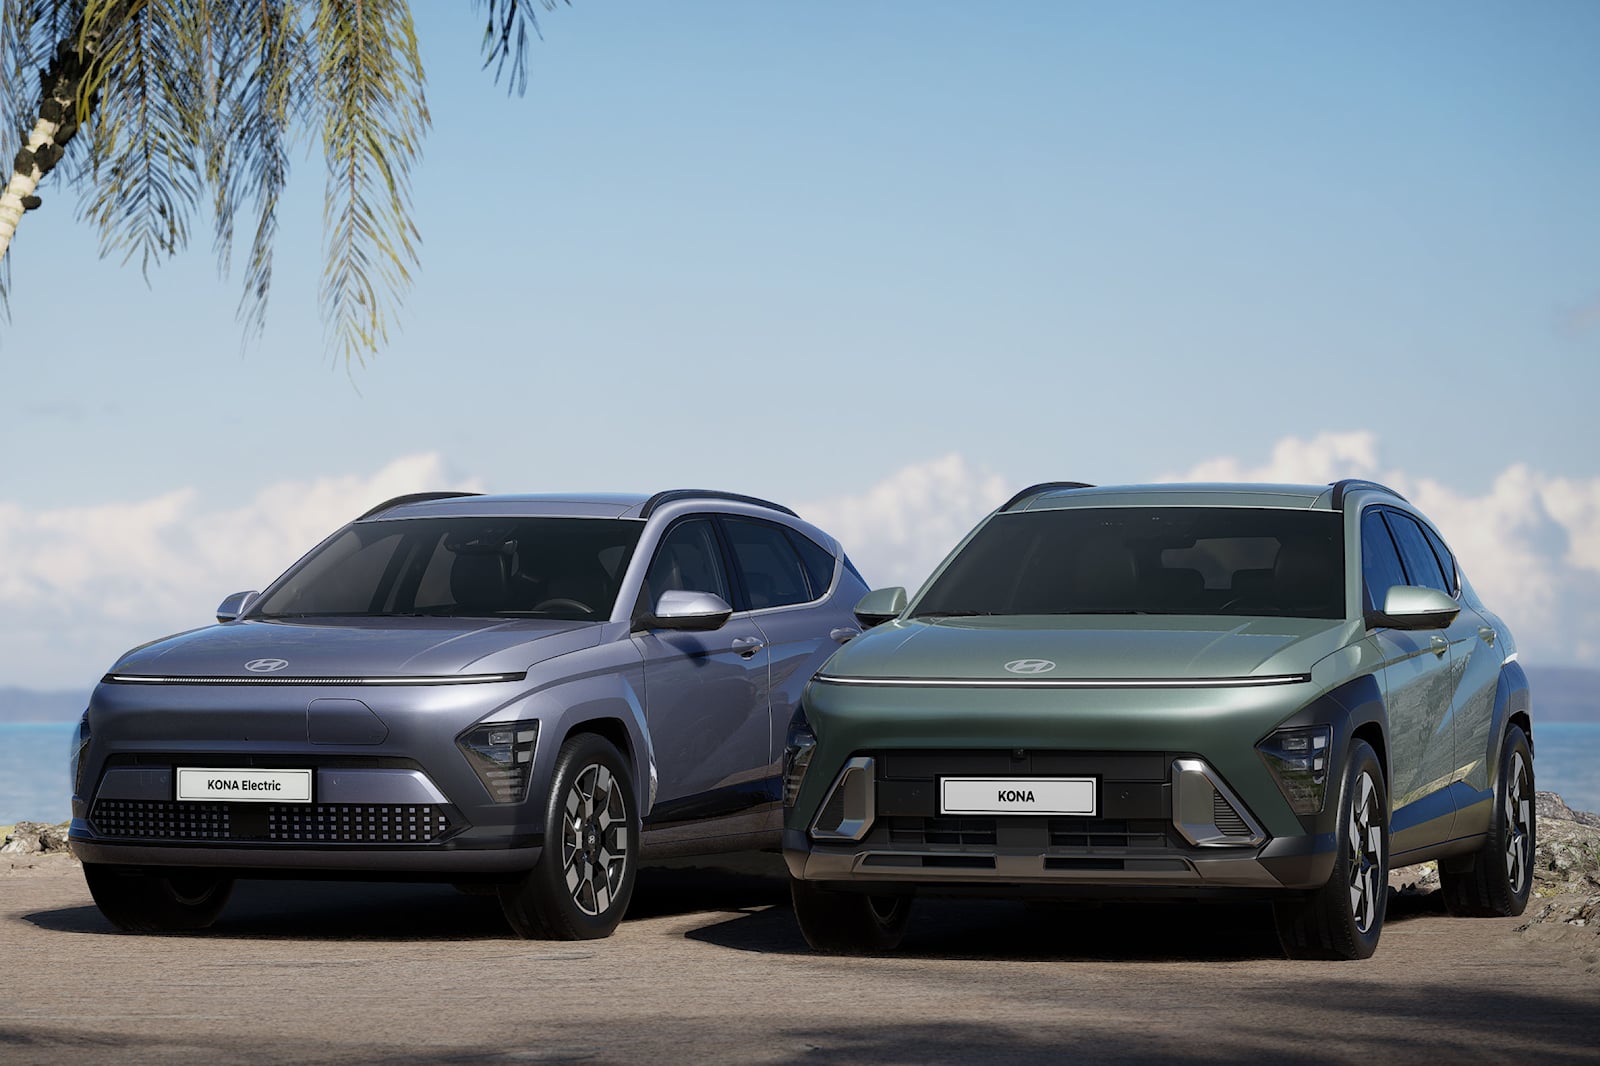 Kona также будет предлагаться как гибридный и полностью электрический автомобиль. Hyundai пока не раскрывает дополнительных подробностей об электромобиле, но отмечает, что гибрид для корейского рынка будет использовать «специально откалиброванную» 1,